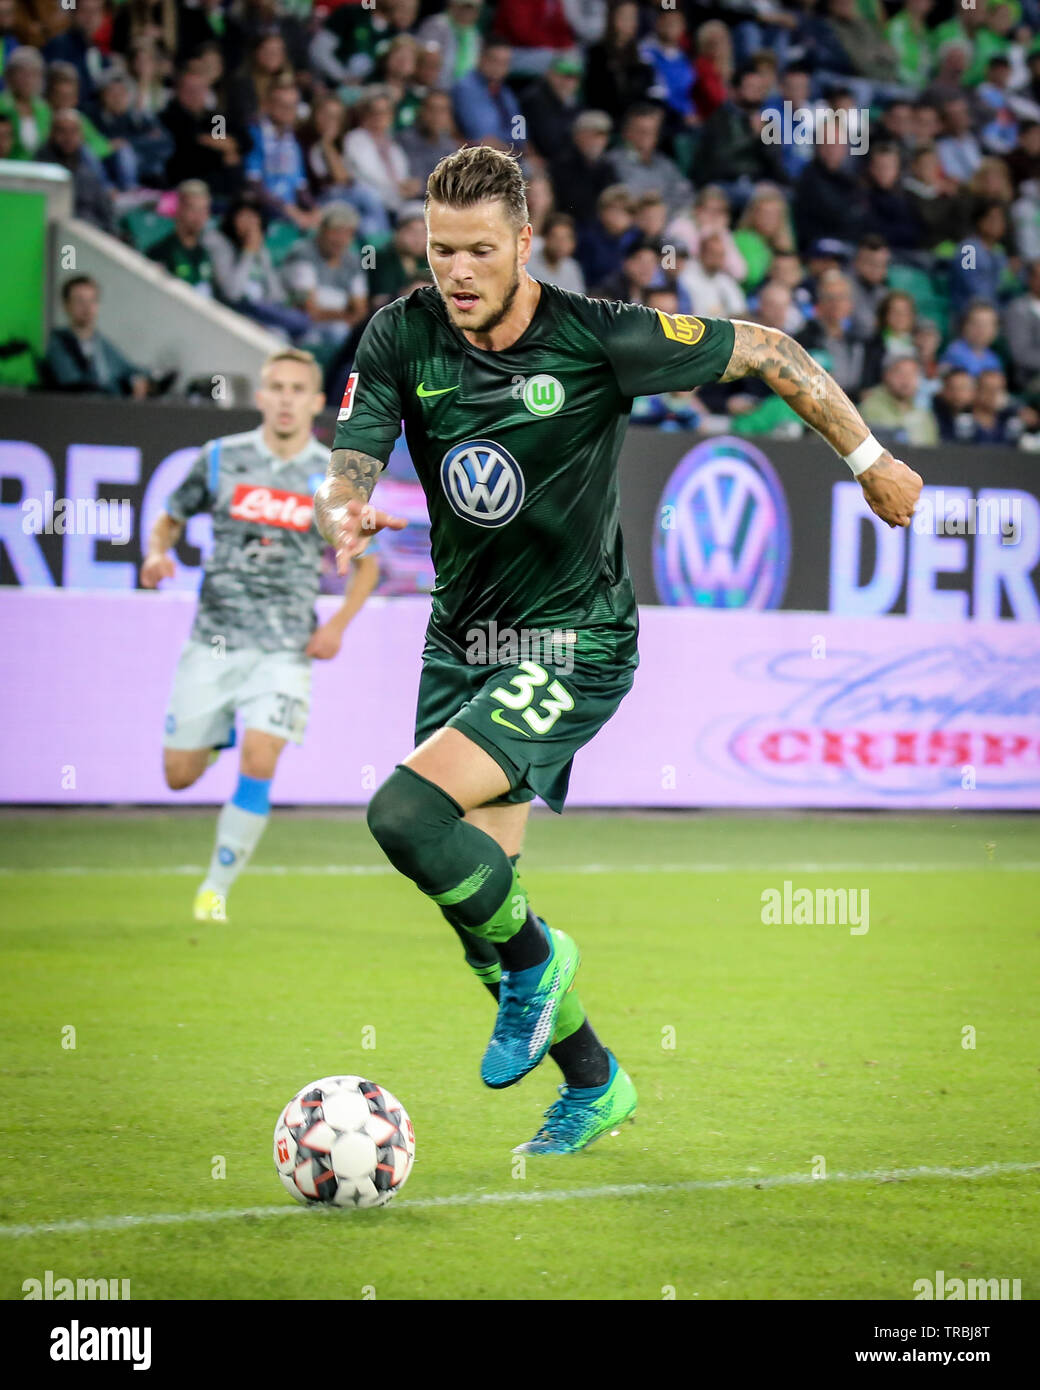 Wolfsburg, Deutschland, 11. August 2018: Fußball-Spieler, Daniel Ginczek #33, in Aktion bei einem Match auf 2018 - 2019 saison. Foto von Michele Morrone. Stockfoto